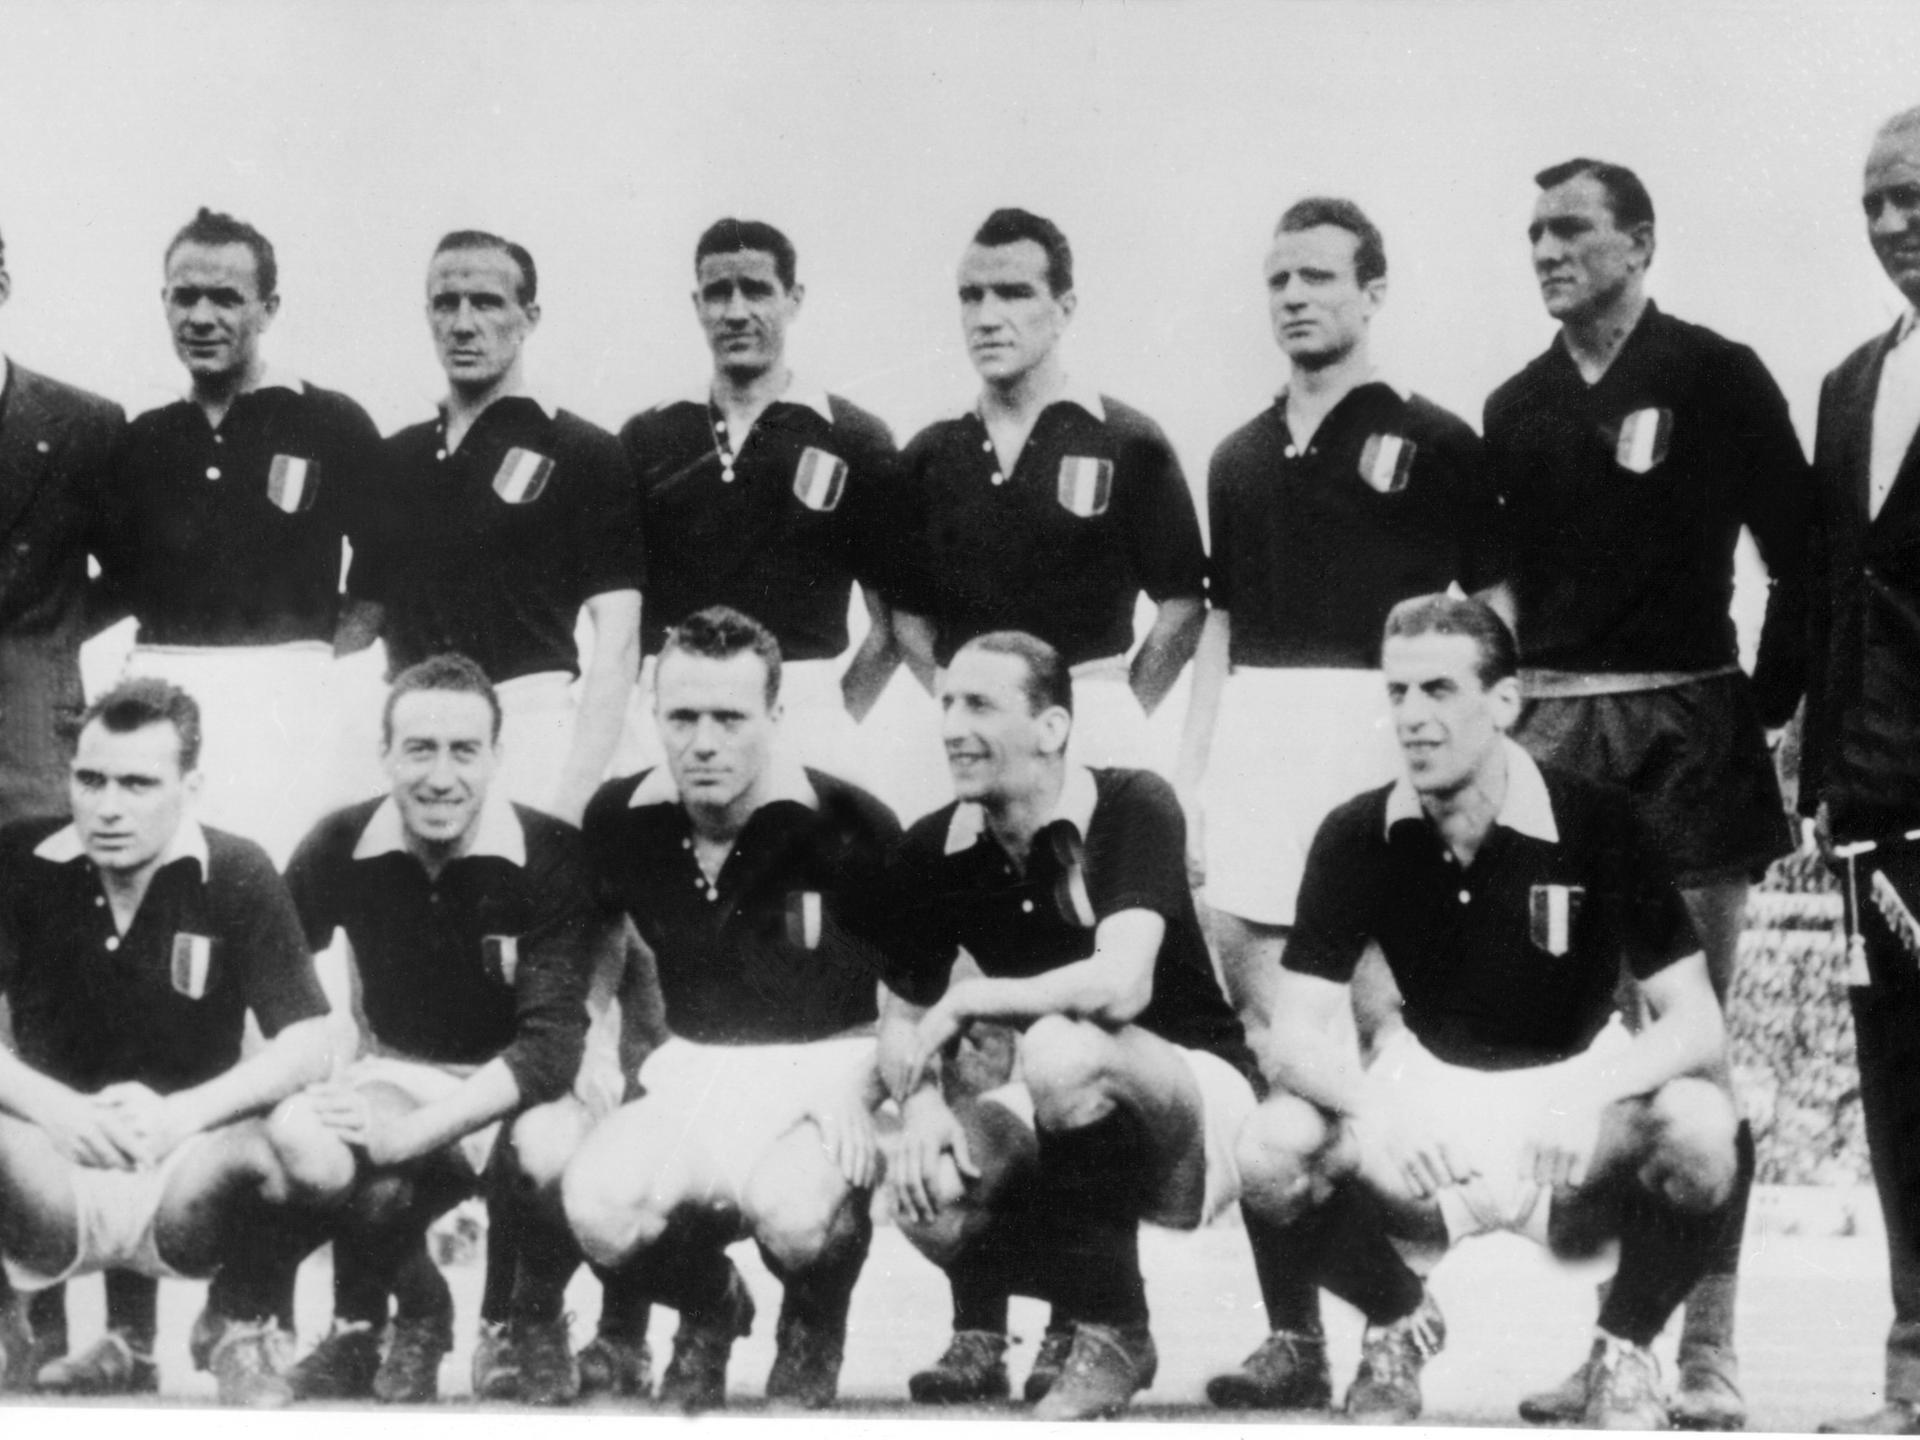 Die Mannschaft des AC Turin stellt sich zu einem Mannschaftsfoto auf vor ihrem Spiel im Stadion von Lissabon. Es ist die letzte Aufnahme dieser Mannschaft. Tage später, am 4.5.1949 verunglückt die Mannschaft auf dem Rückflug von Lissabon beim Landeanflug vor Turin. 